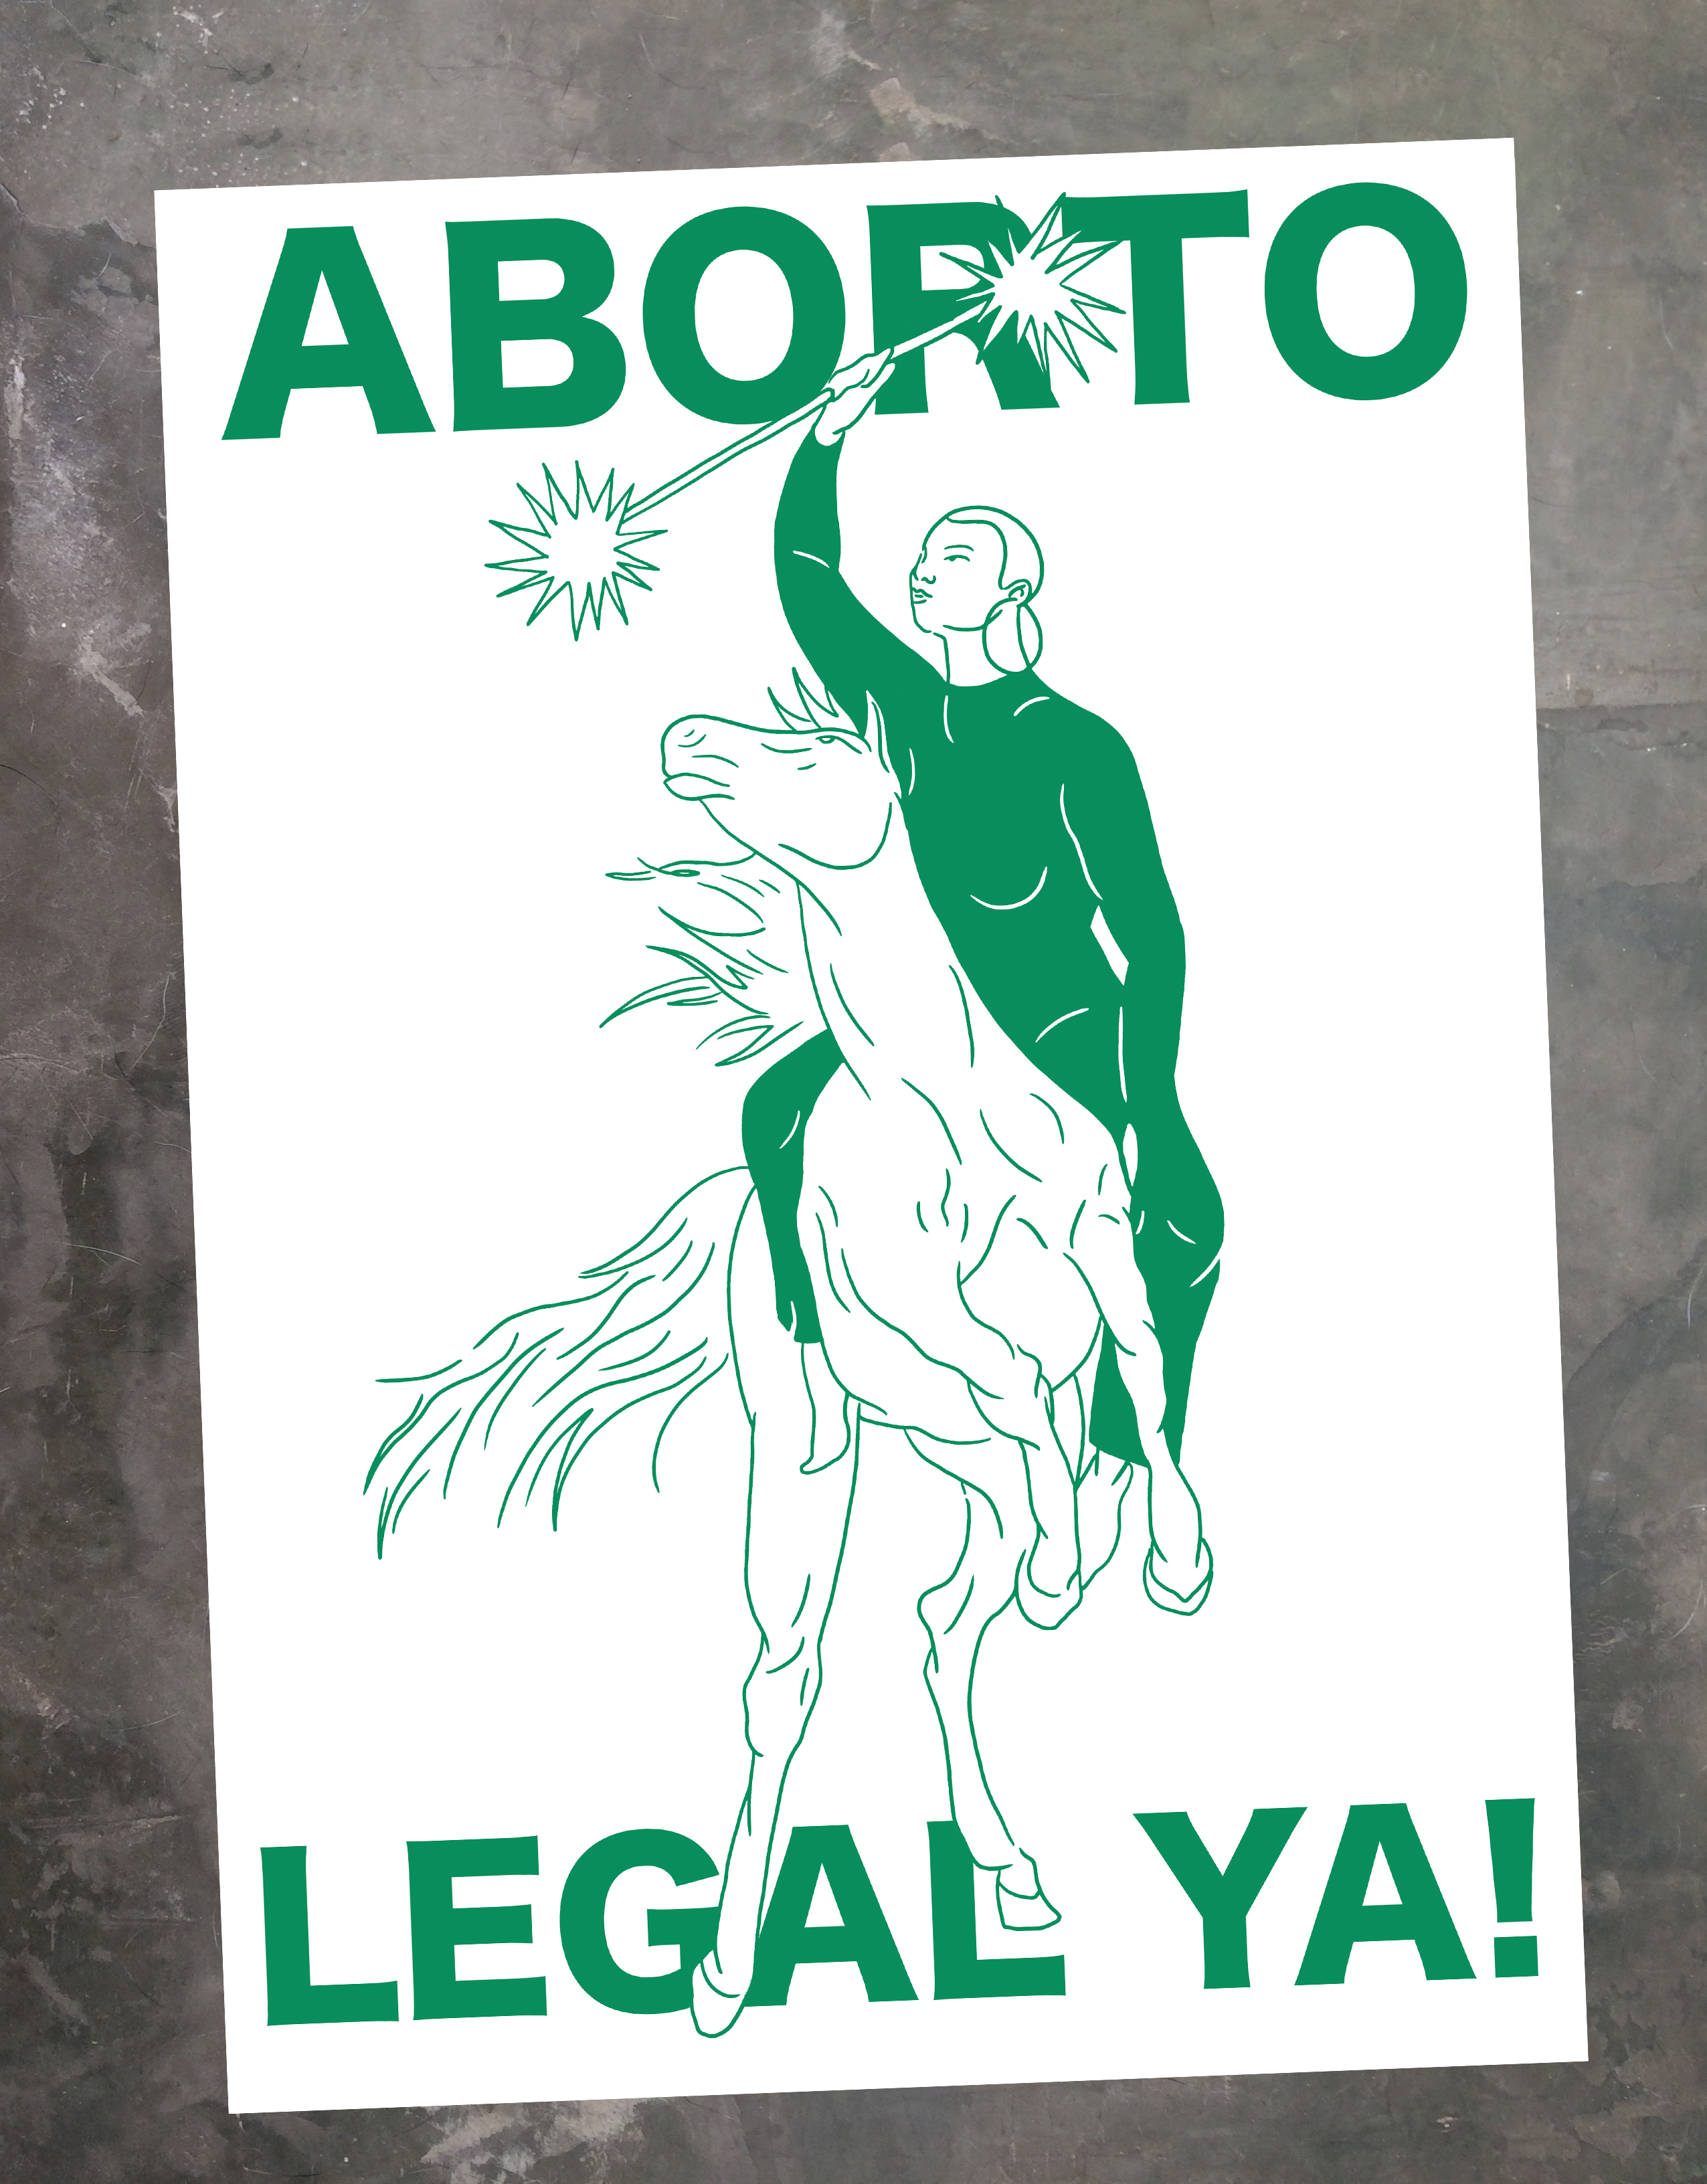 DAI RUIZ Aborto legal